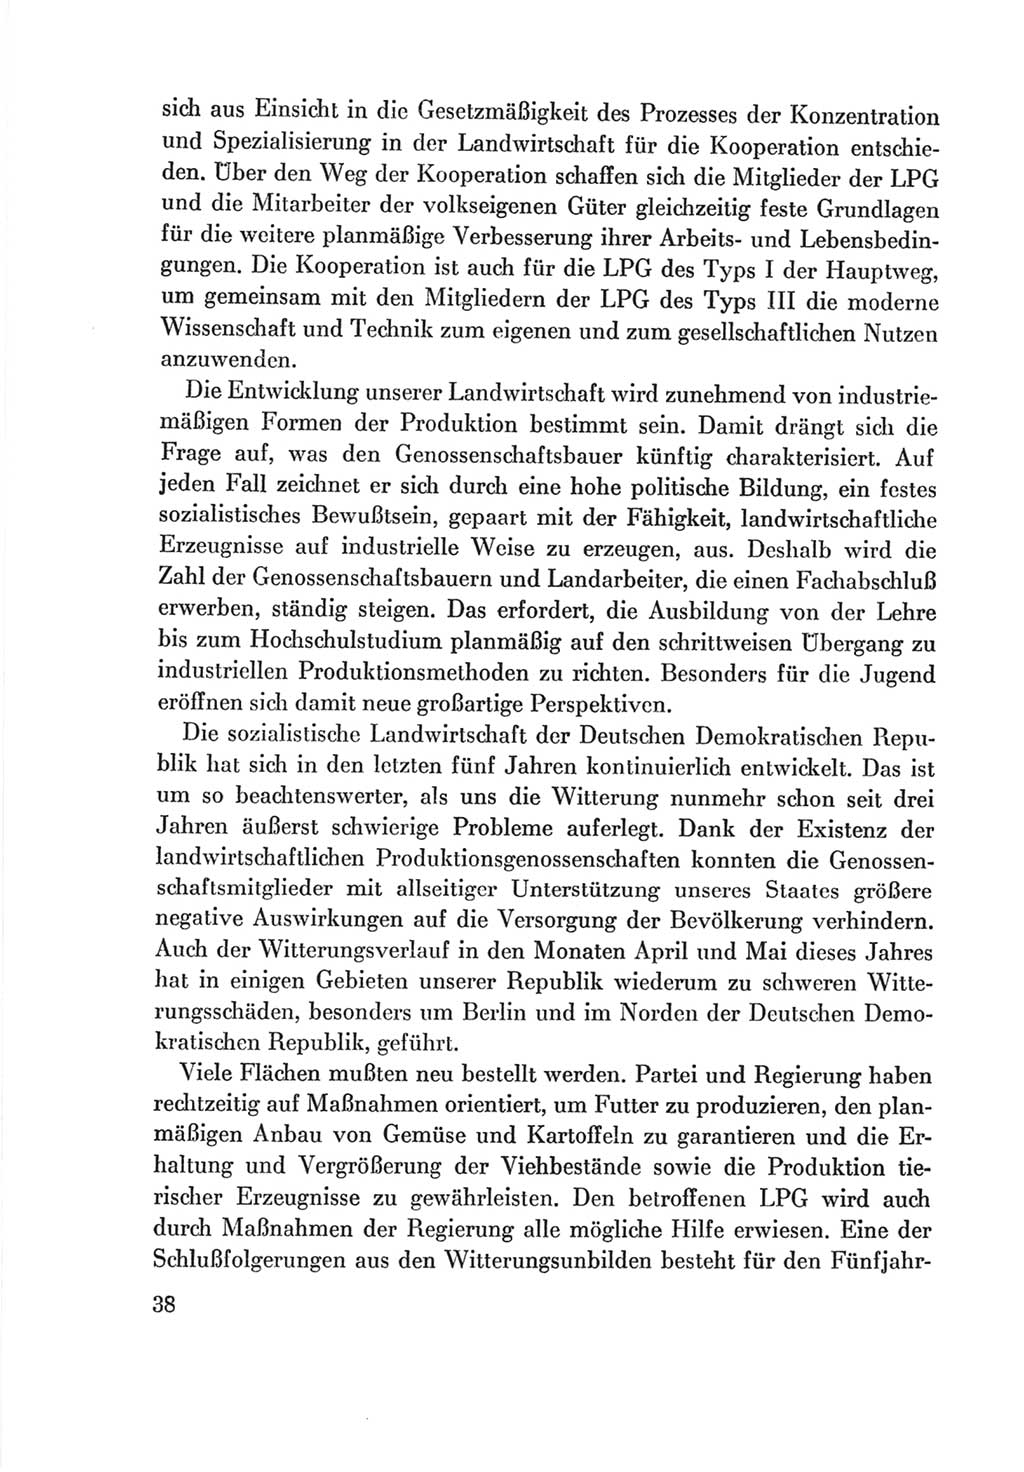 Protokoll der Verhandlungen des Ⅷ. Parteitages der Sozialistischen Einheitspartei Deutschlands (SED) [Deutsche Demokratische Republik (DDR)] 1971, Band 2, Seite 38 (Prot. Verh. Ⅷ. PT SED DDR 1971, Bd. 2, S. 38)